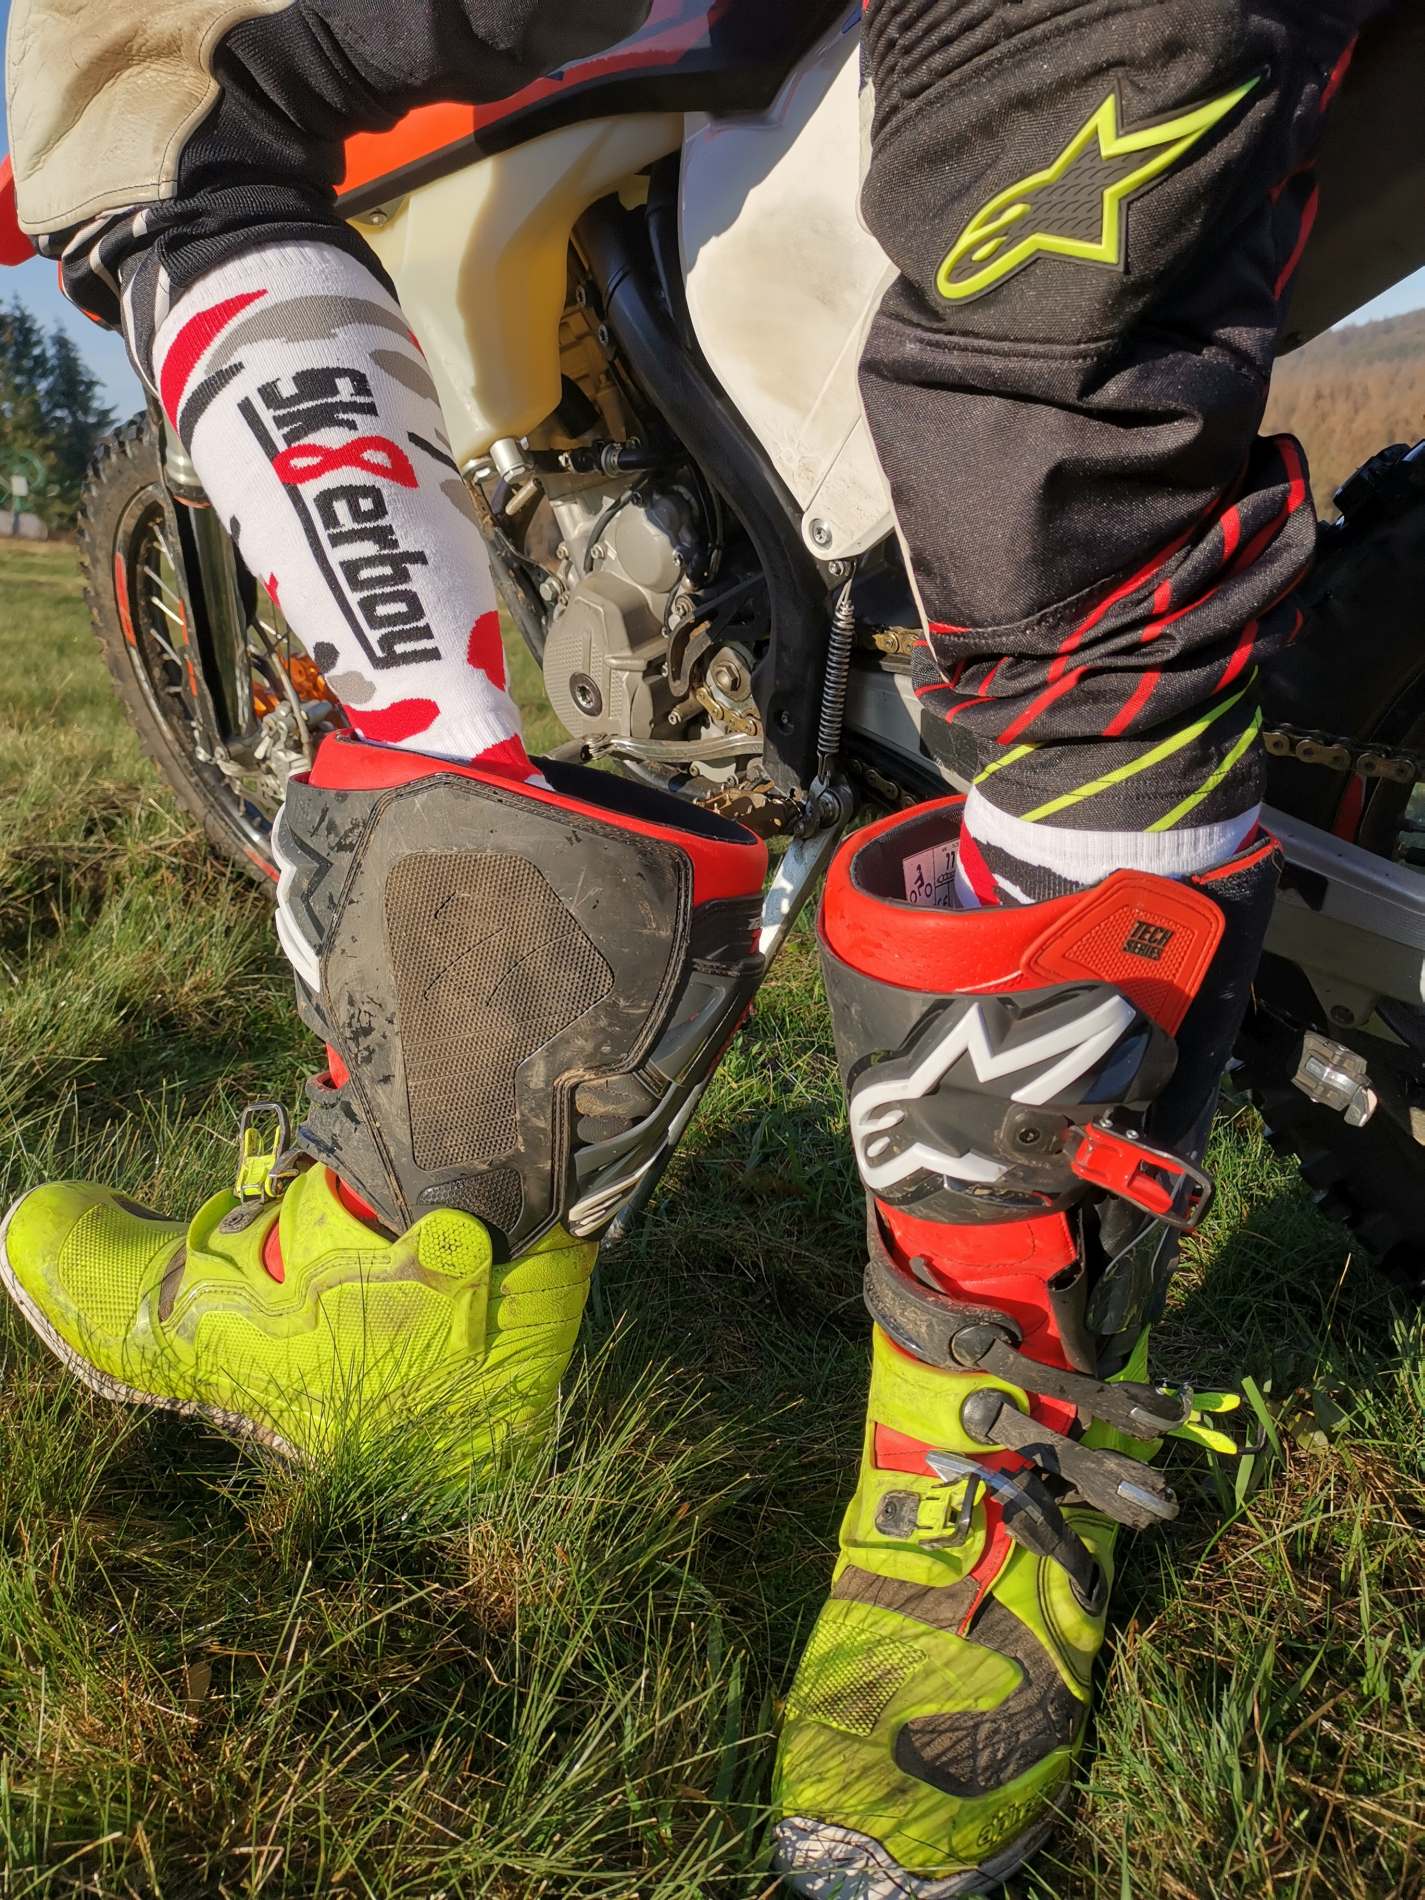 motorradfahrer zieht gerade in der sonne seine stiefel aus und traegt mx socks von sk8erboy in flecktarn muster mit großem logo auf der rueckseite